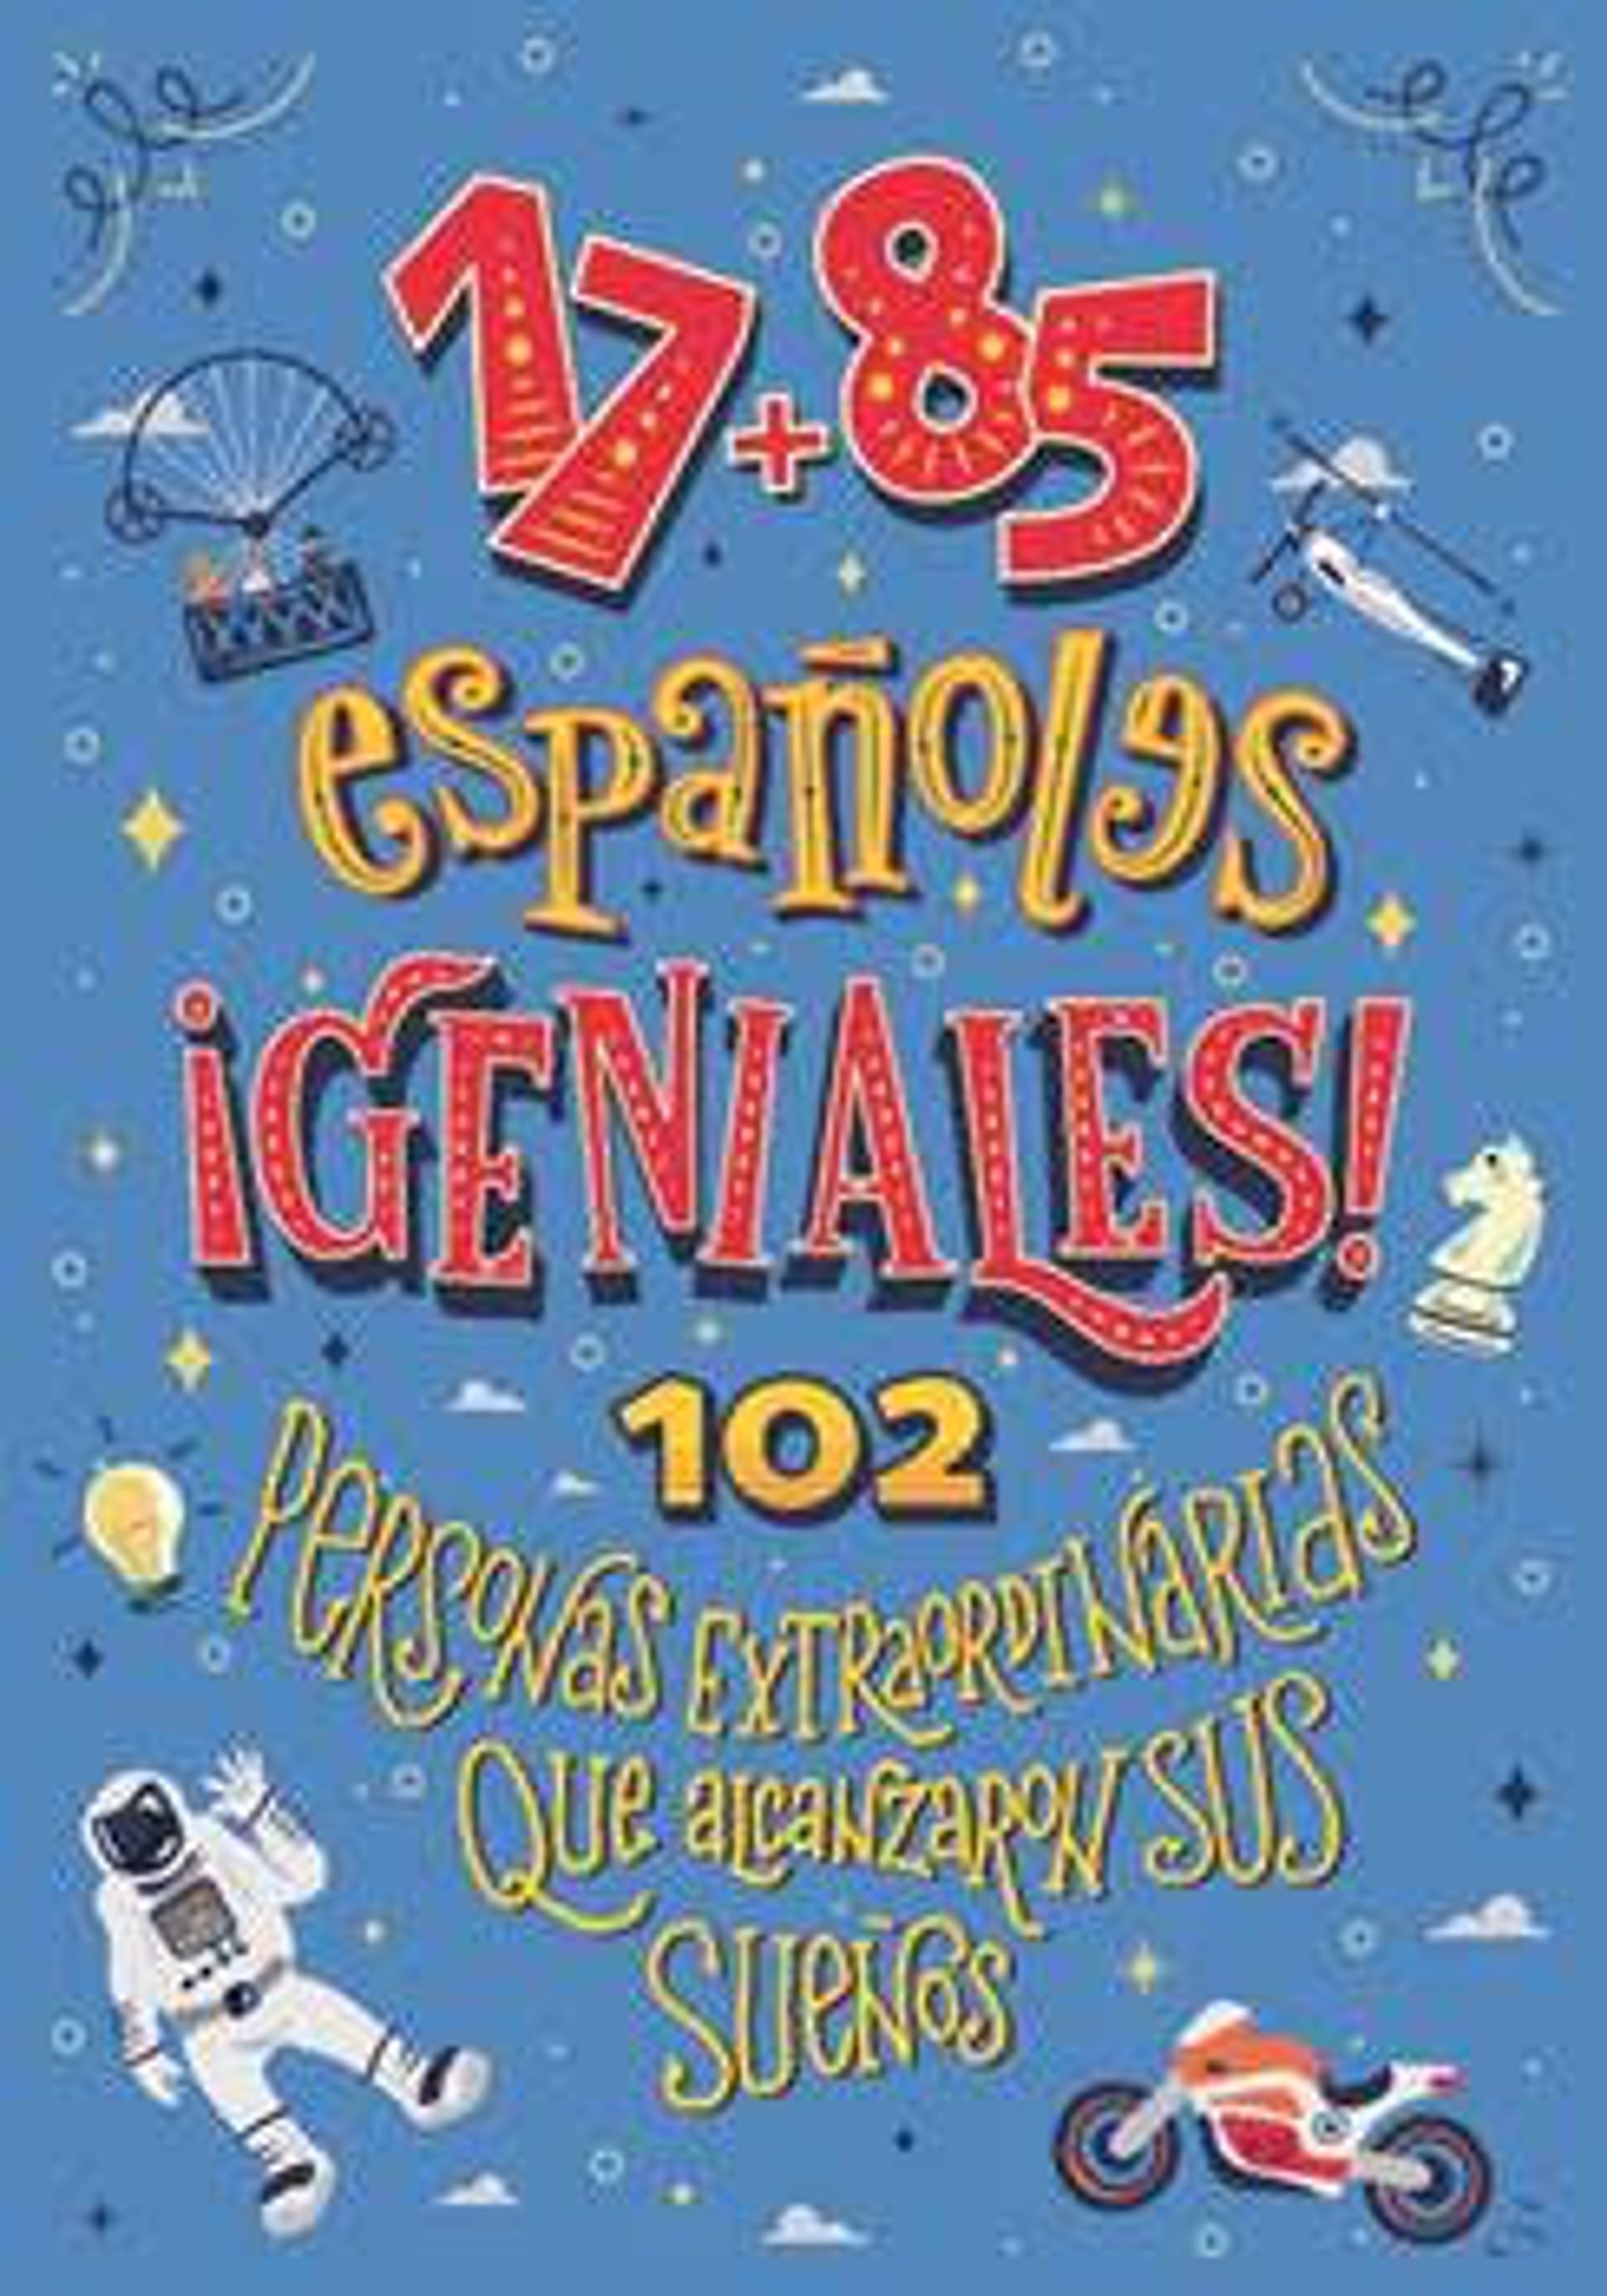 Rafa Nadal, Margarita Salas, o Rosalía, entre los 102 españoles extraordinarios recogidos en un libro infantil